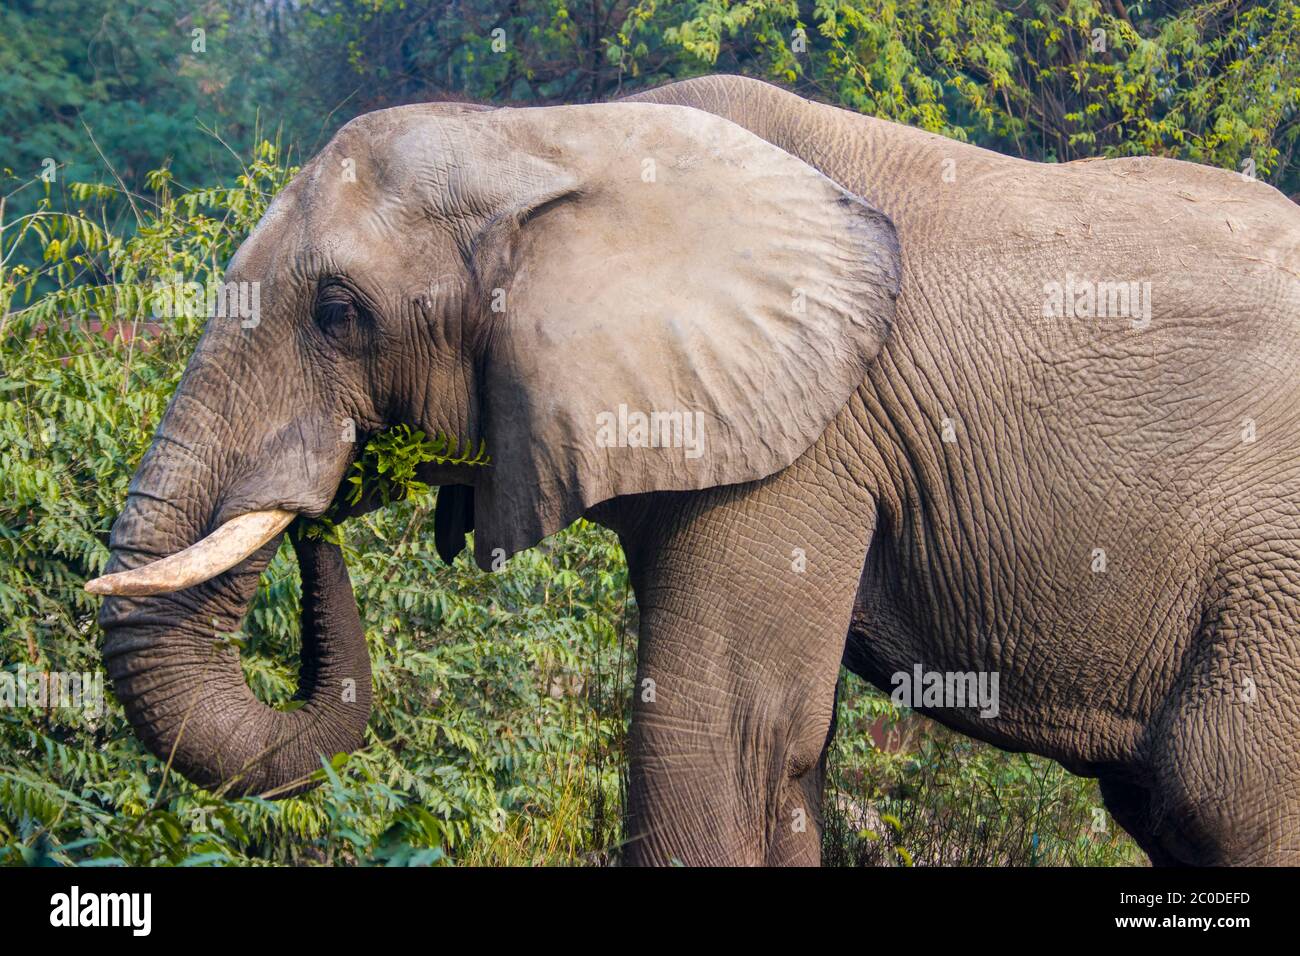 L'éléphant d'Afrique solitaire Shankar mange une plante dans le Bush du zoo de New delhi. Cet éléphant est un cadeau du Zimbabwe au gouvernement indien. Banque D'Images